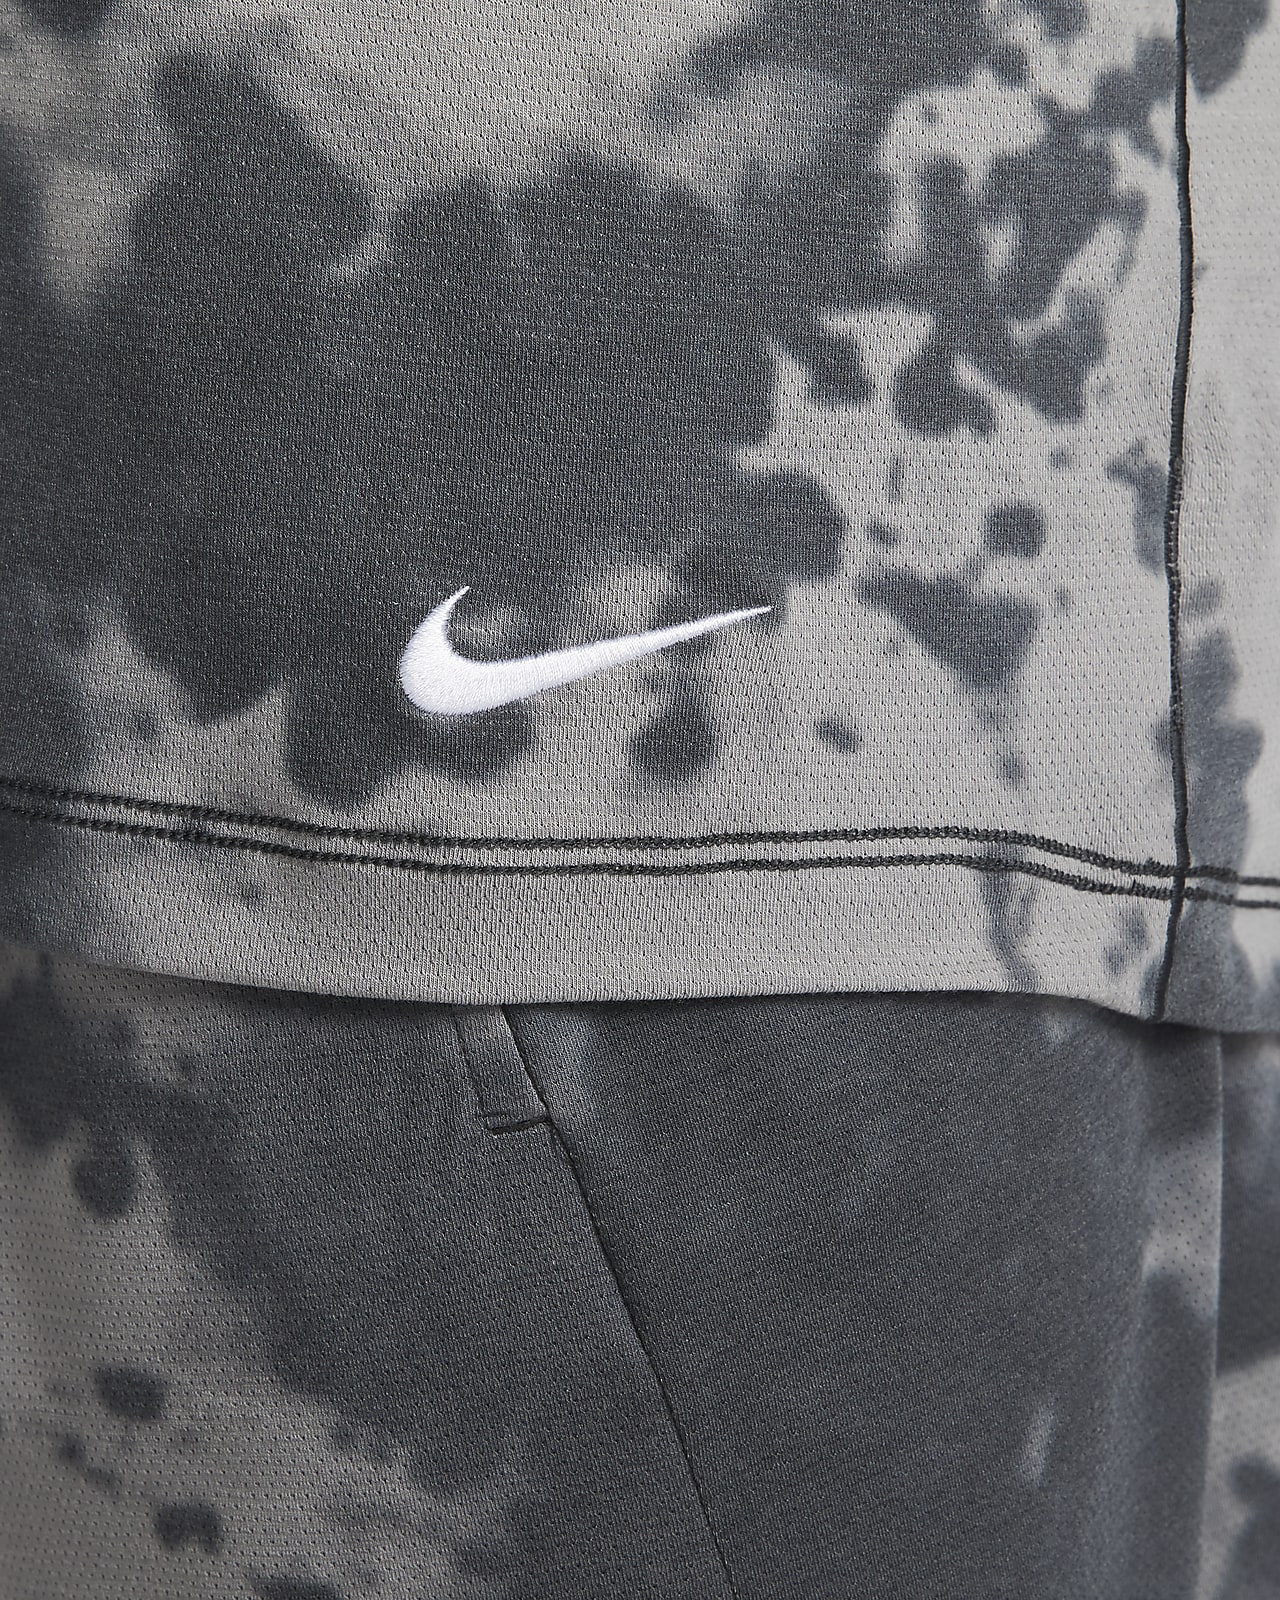 Nike Dri-FIT Camiseta yoga sin mangas con estampado por toda la prenda - Hombre. Nike ES